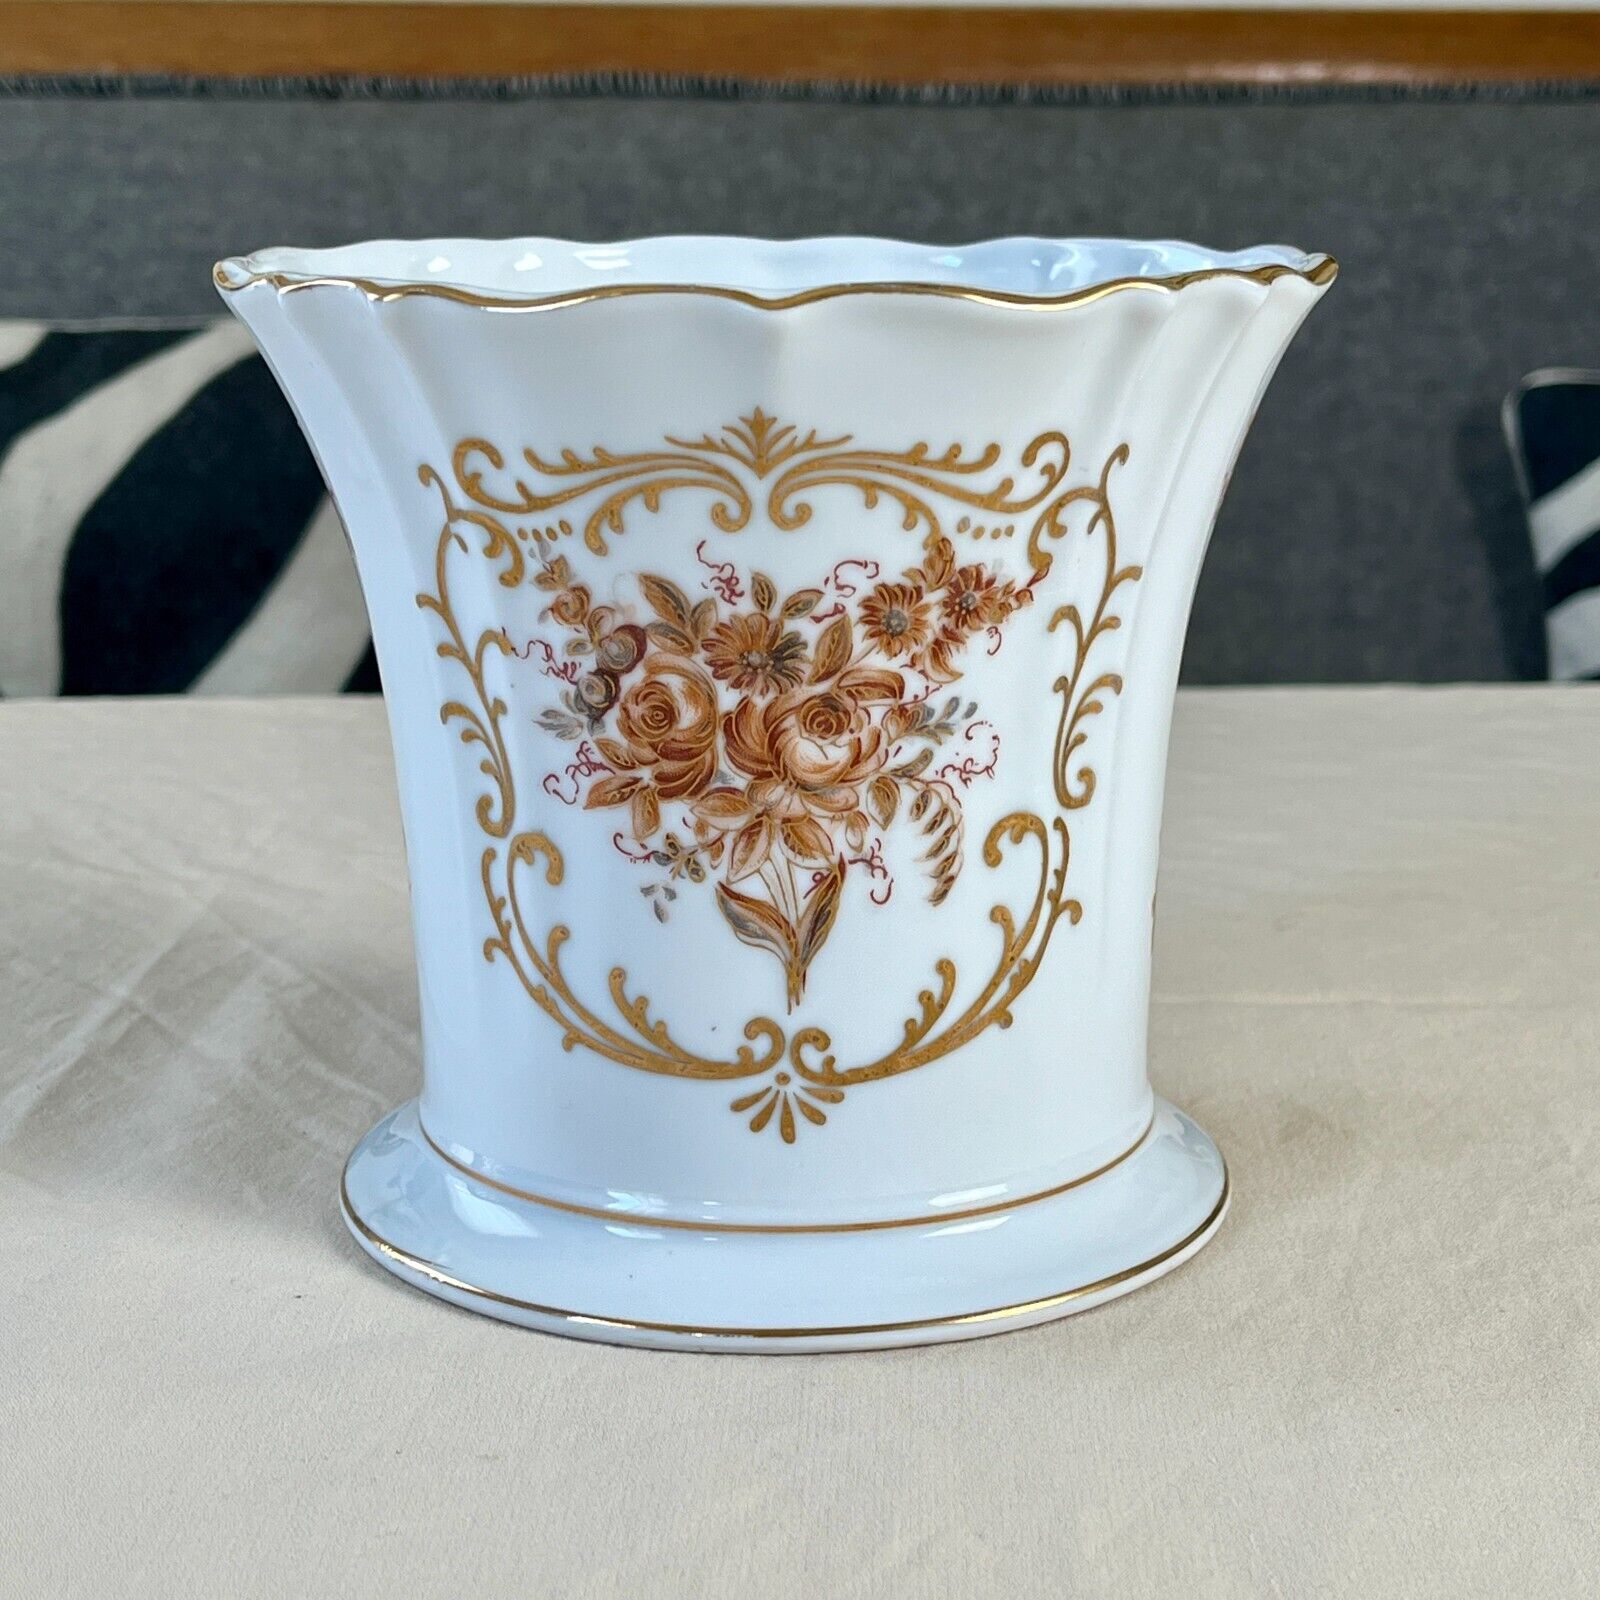 Vintage LJ PORCELAIN Pot Planter Vase - Amber Floral Design - Gold Trim - Japan